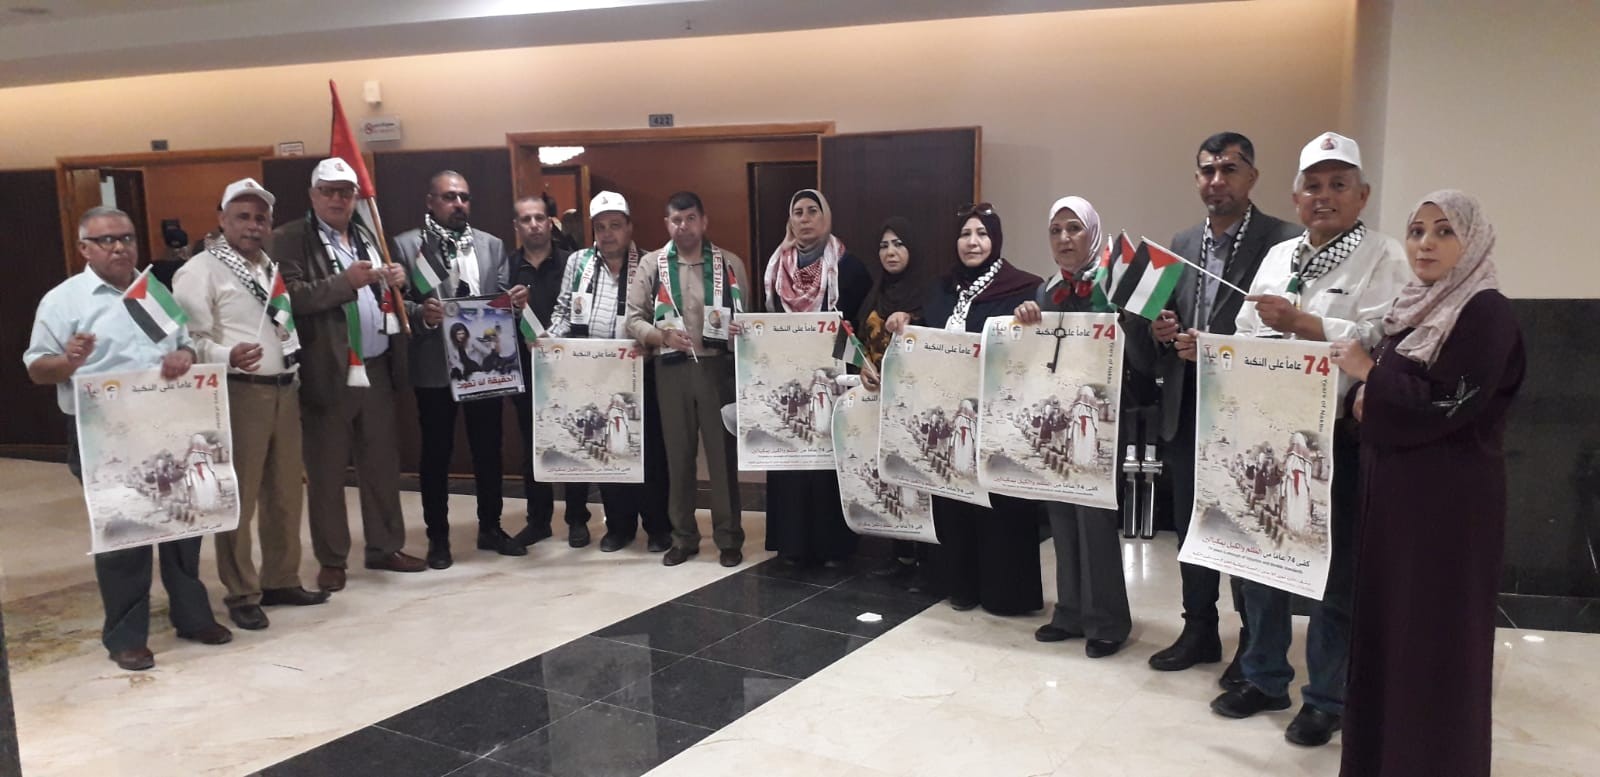 التجمع الفلسطيني للوطن و الشتات يشارك في فعاليات ذكرى النكبة ال74 في جامعة الأزهر بمدينة غزة  5.jpg